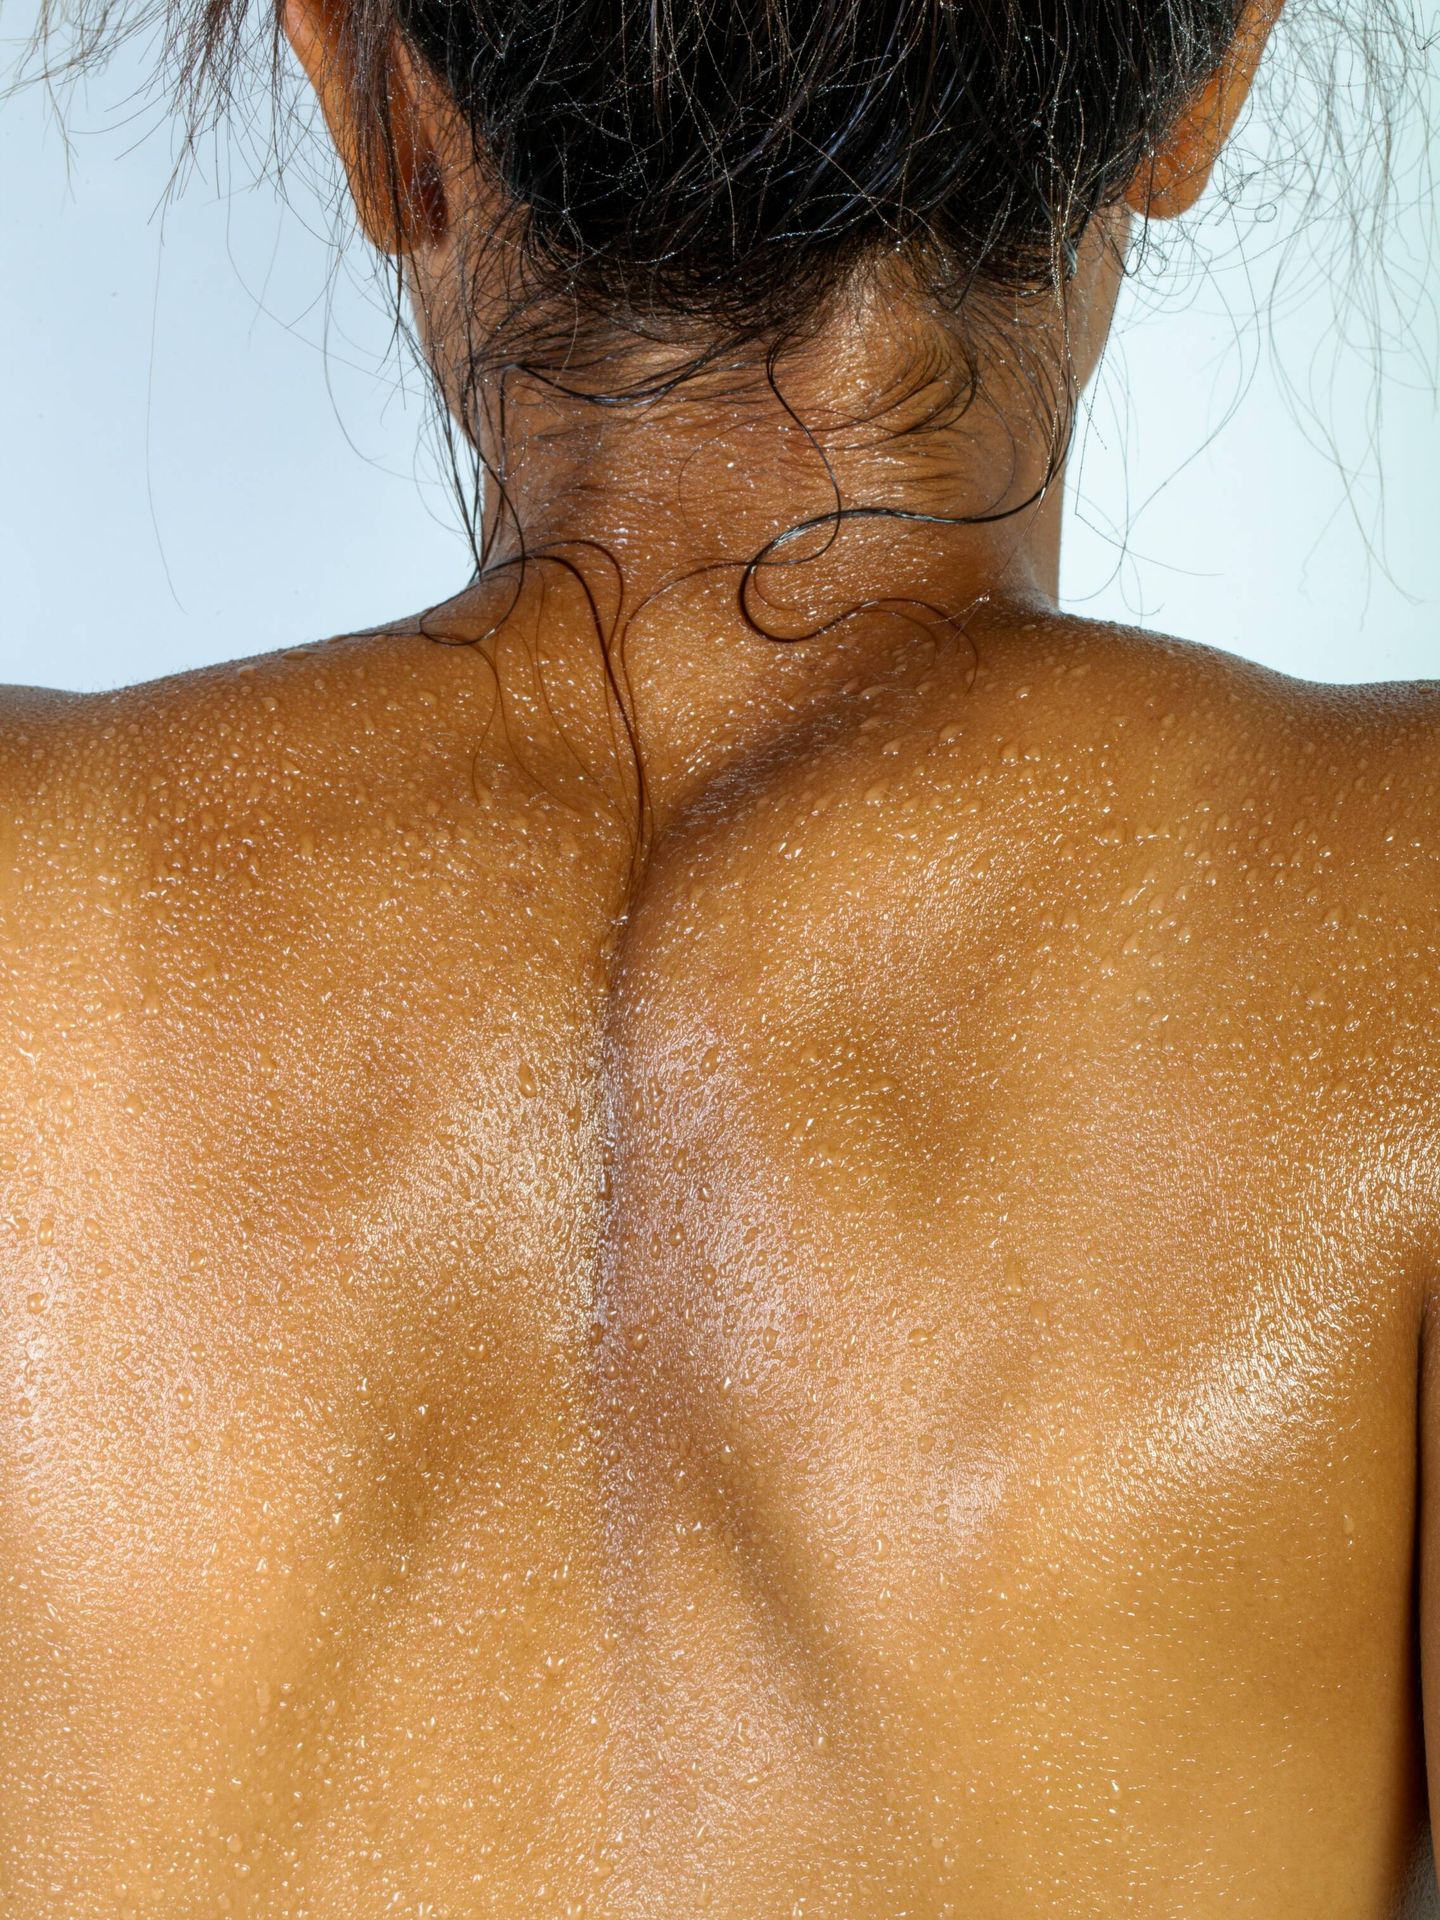 Durante la ducha no solemos limpiar la espalda de la forma adecuada. (Unsplash)